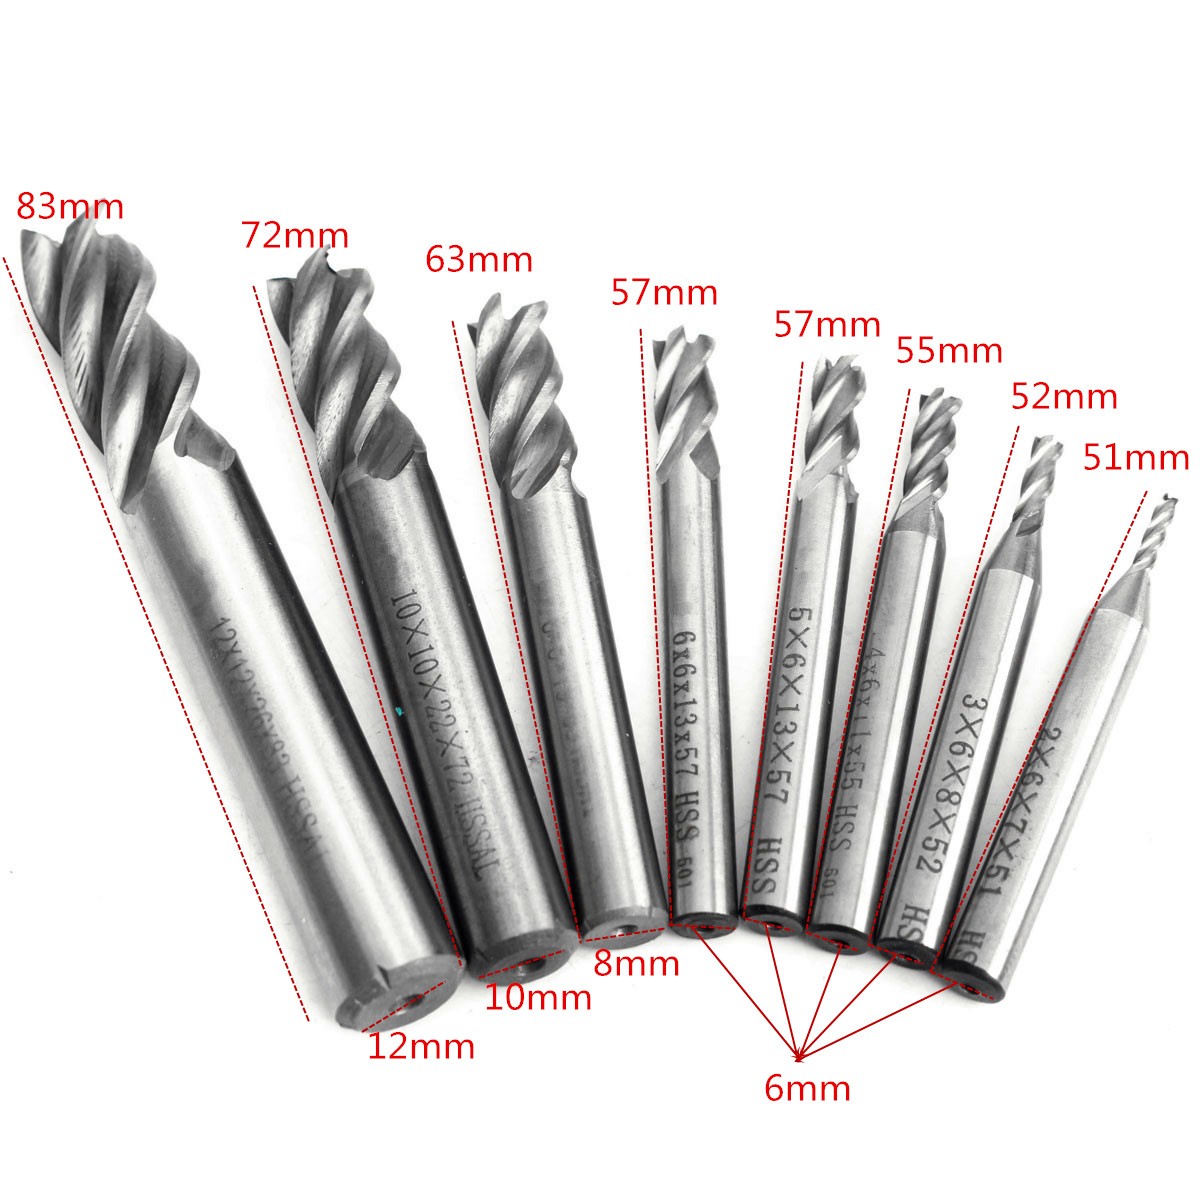 2-12mm-HSS-4-Flute-End-Mill-Cutter-Straight-Shank-Milling-Cutter-Drill-Bit-CNC-Tool-1116645-3